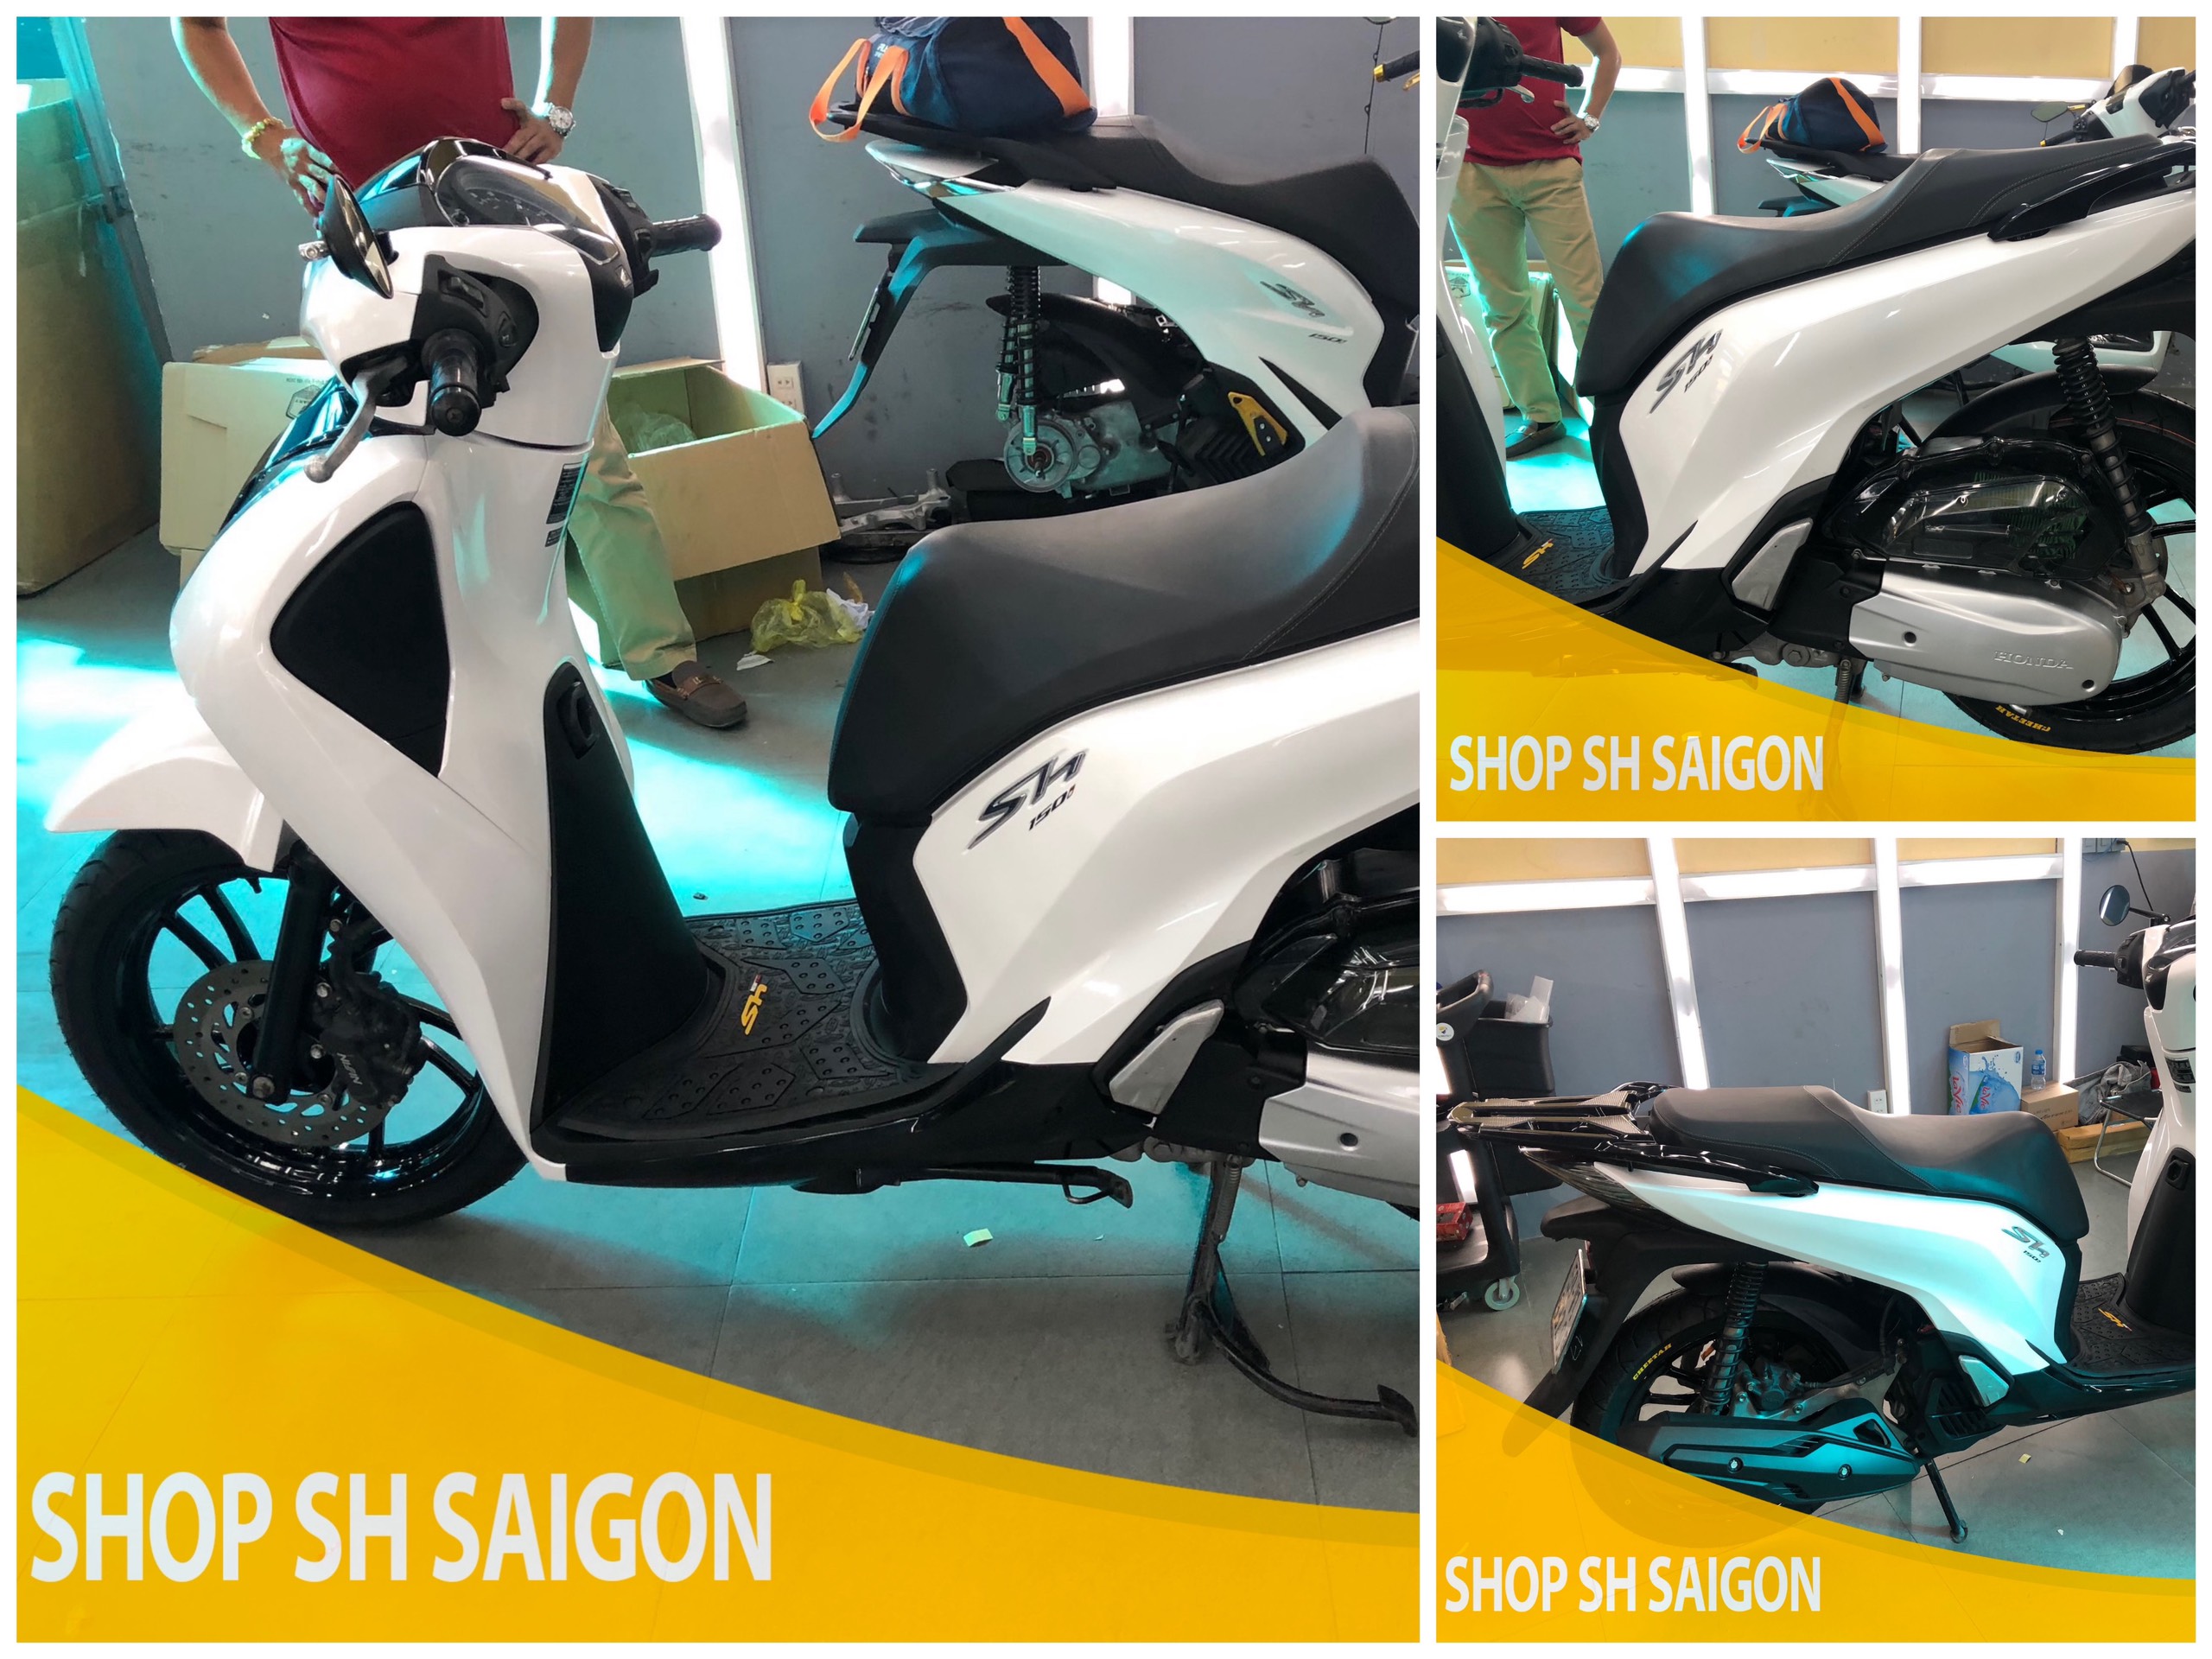 Tổng hợp Mẫu xe và đồ chơi xe được anh em biker ưa thích tại Shop SH Sài Gòn 13